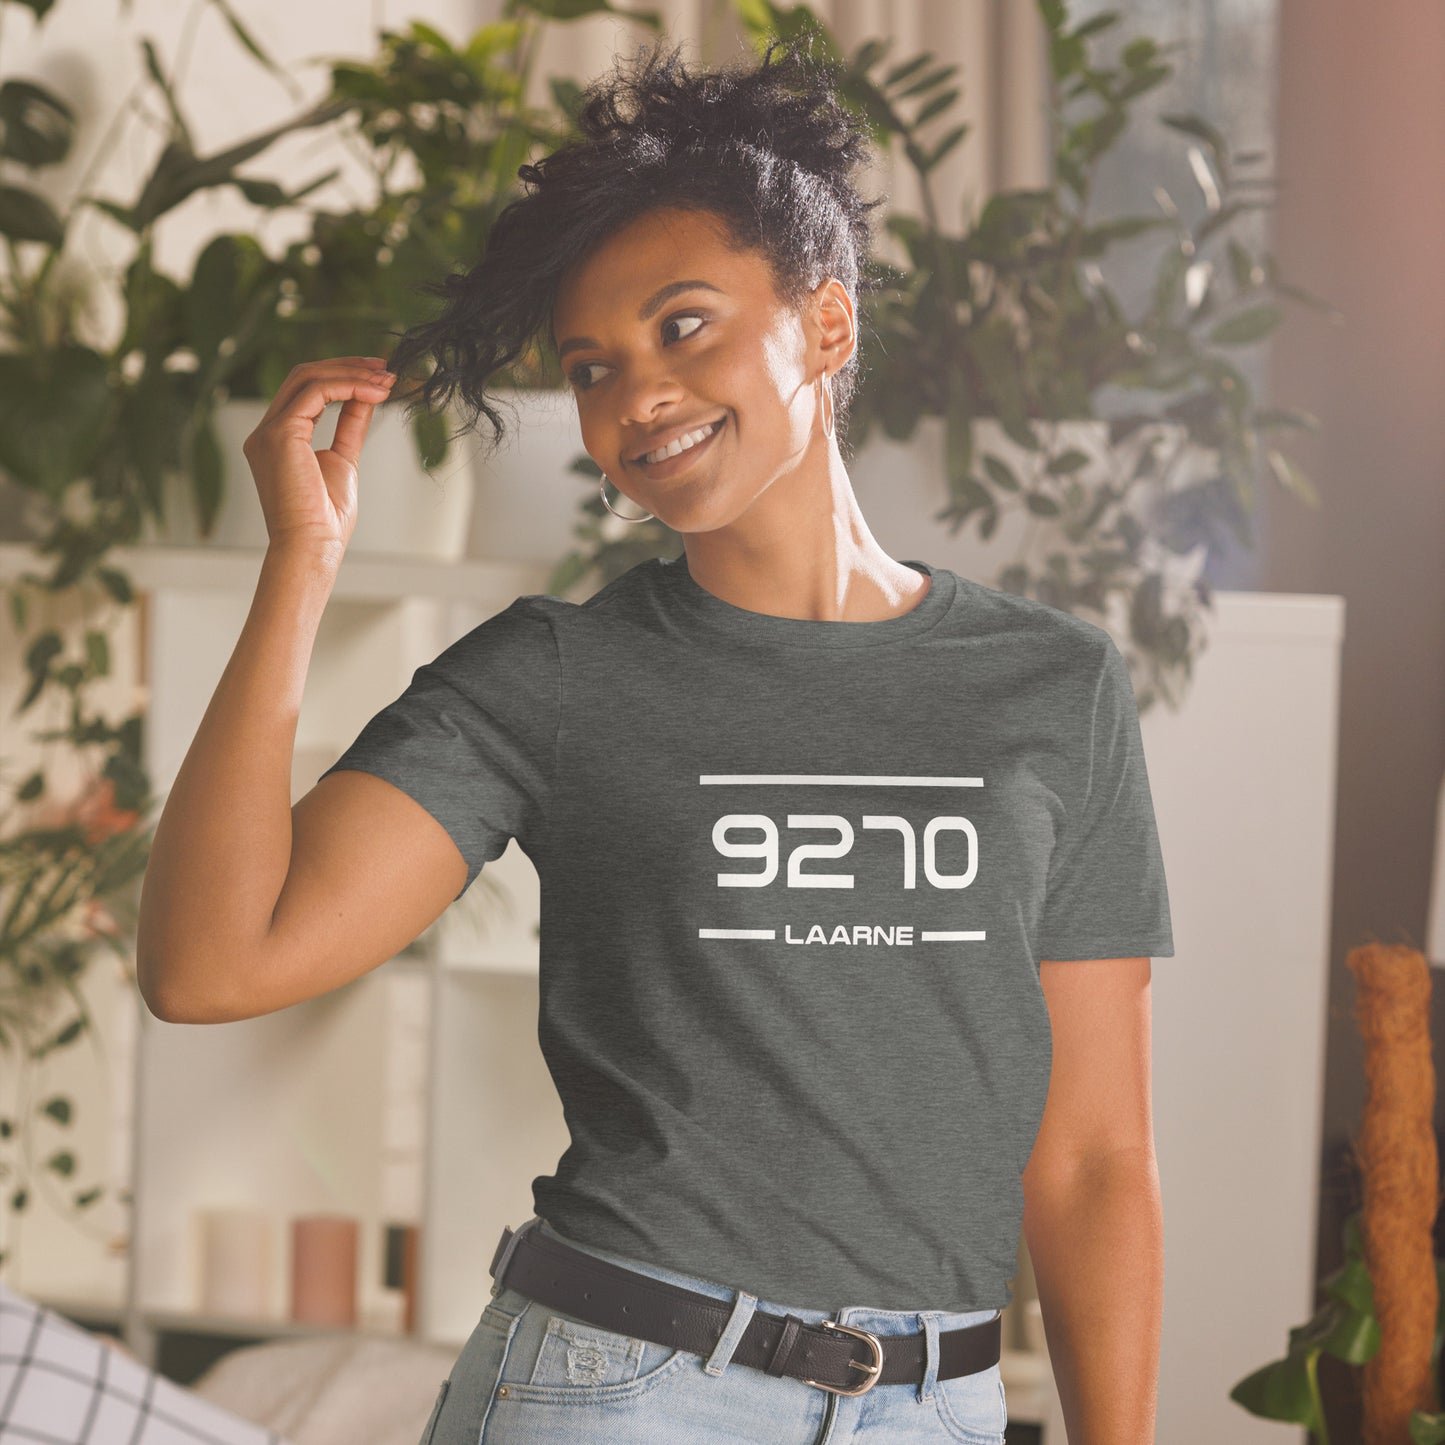 T-Shirt - 9270 - Laarne